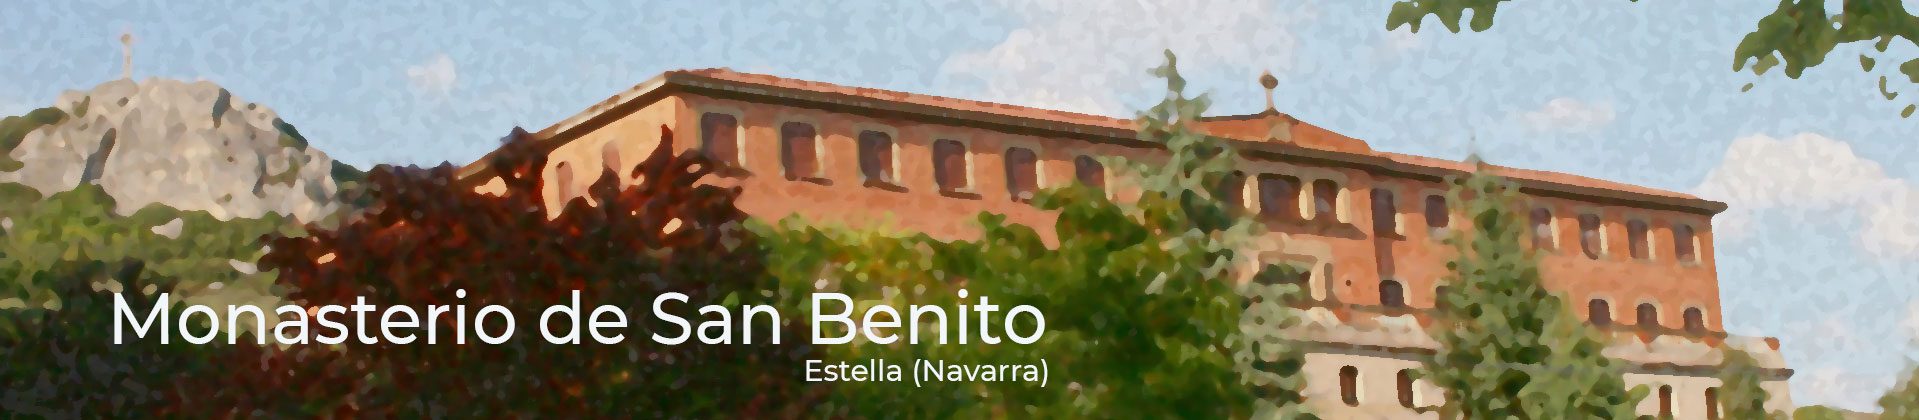 San Benito en el patrimonio navarro